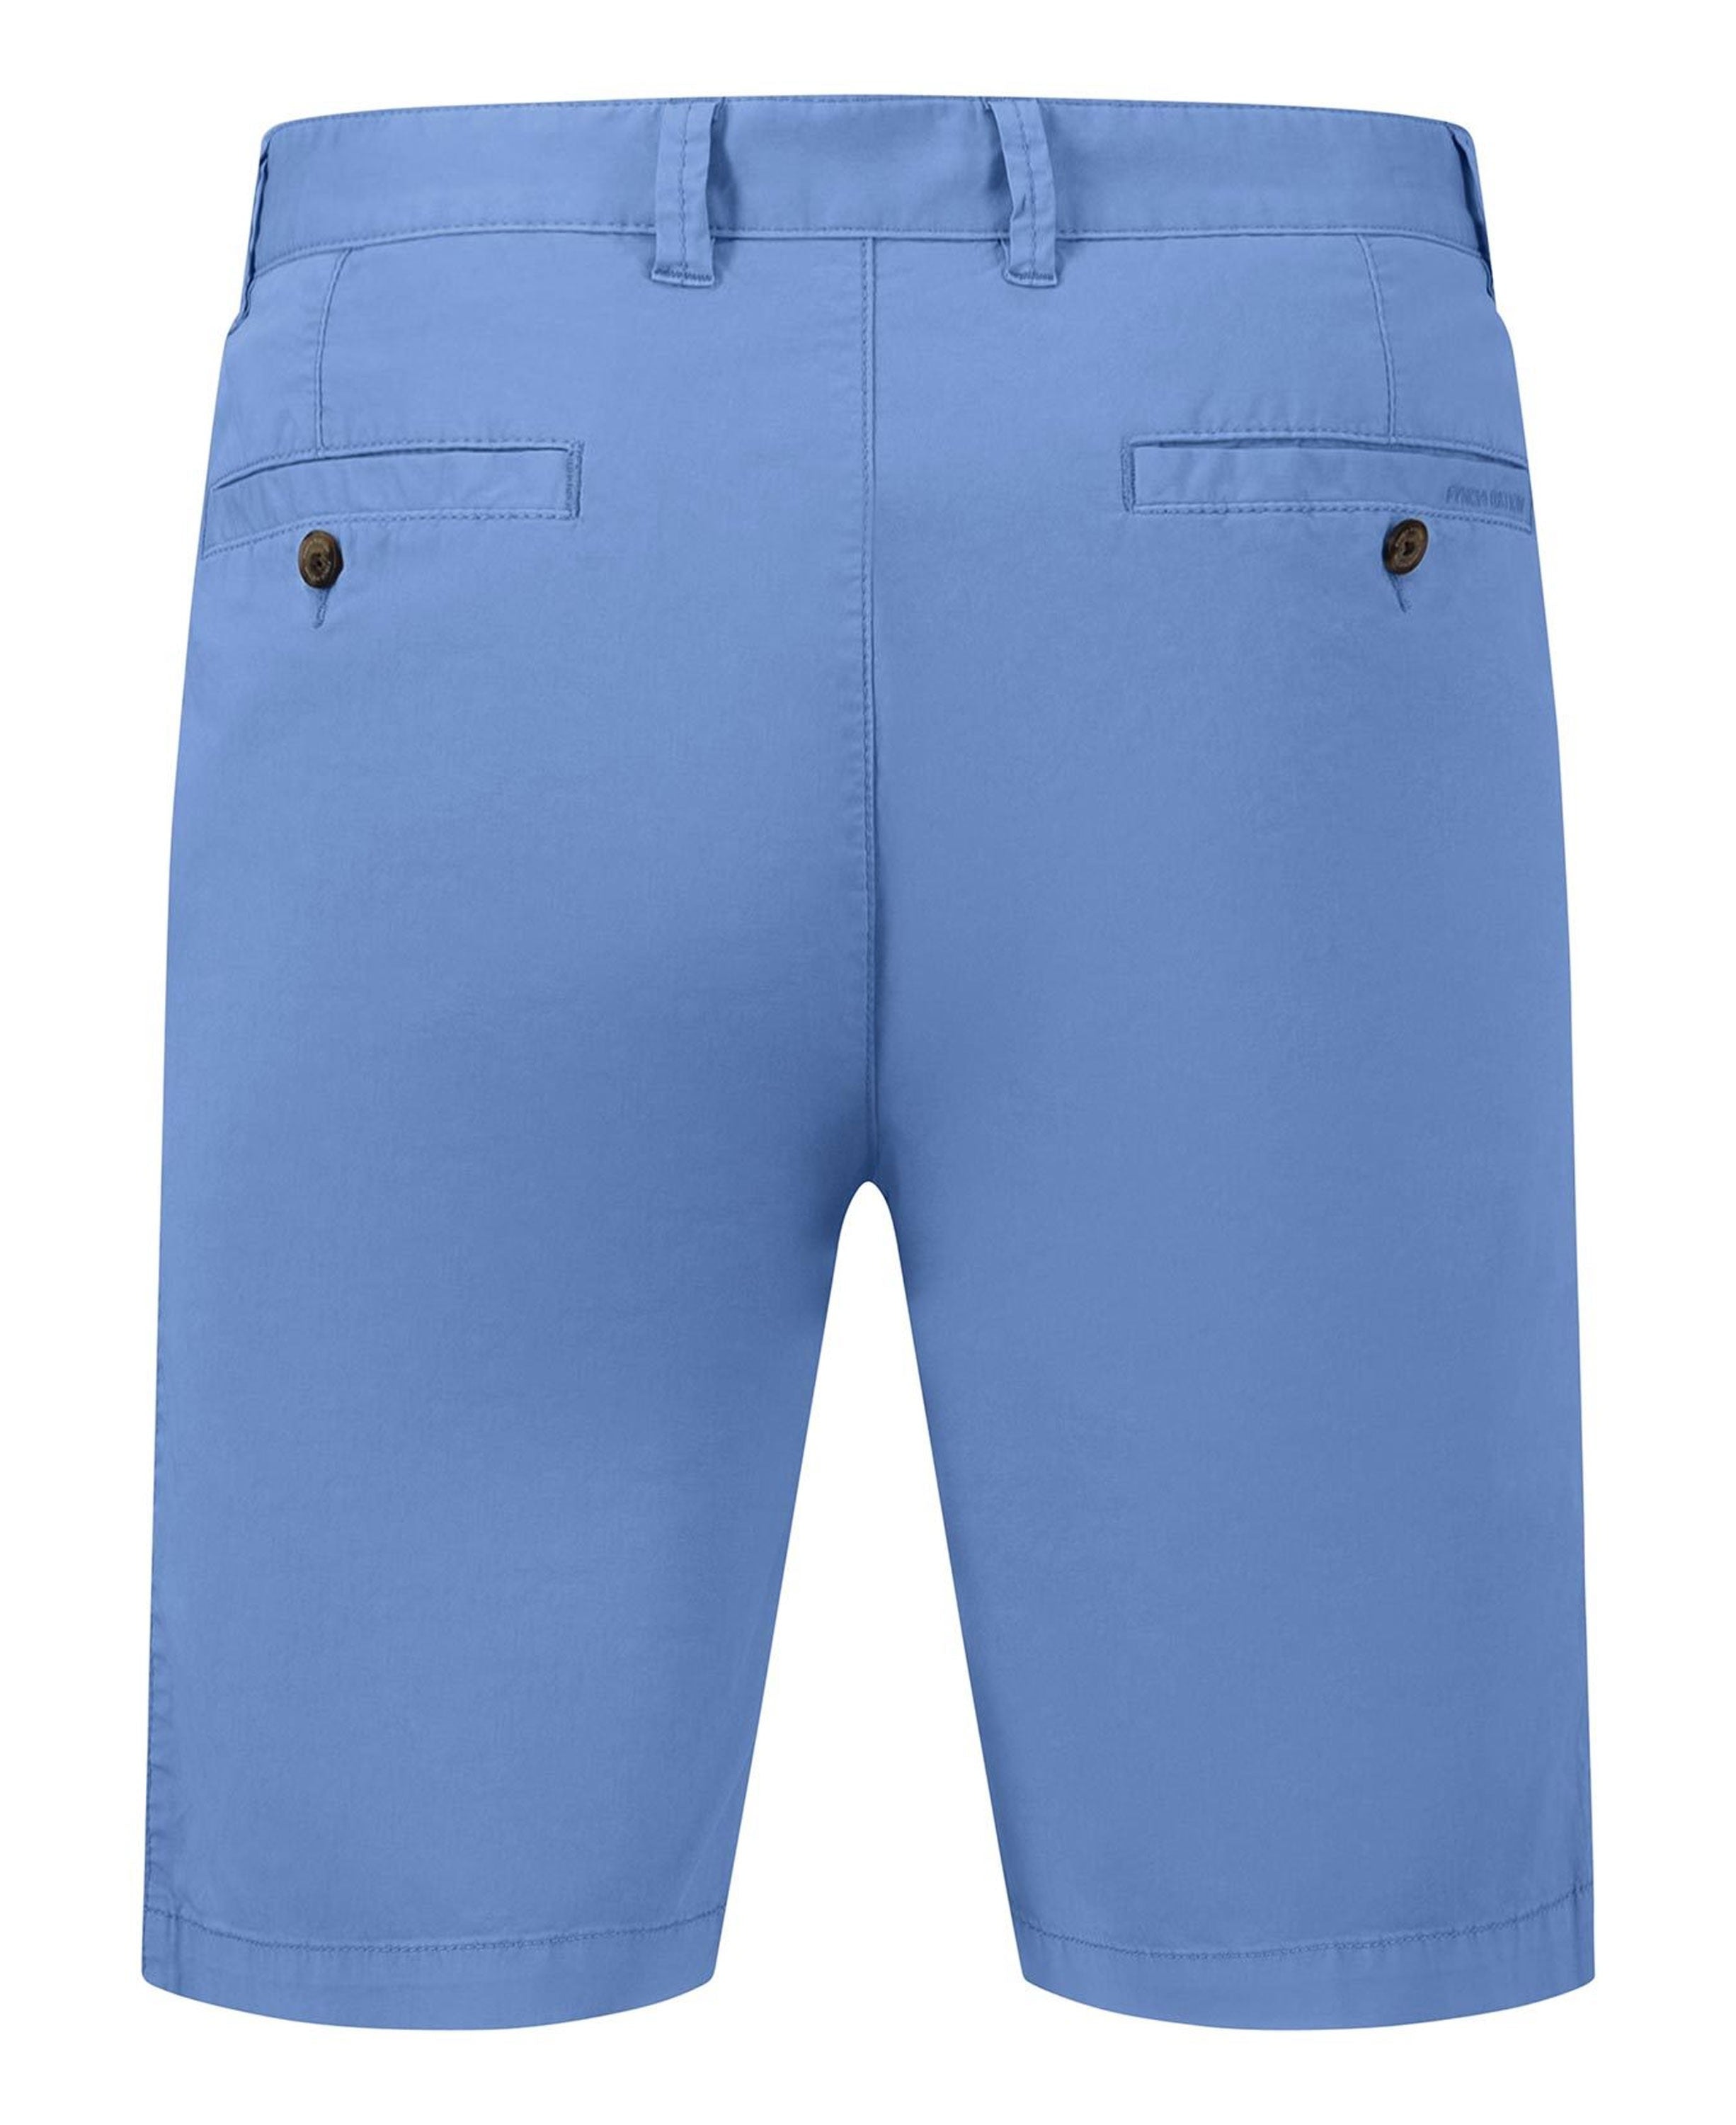 Summer Stretch Bermuda Shorts - Crystal Blue